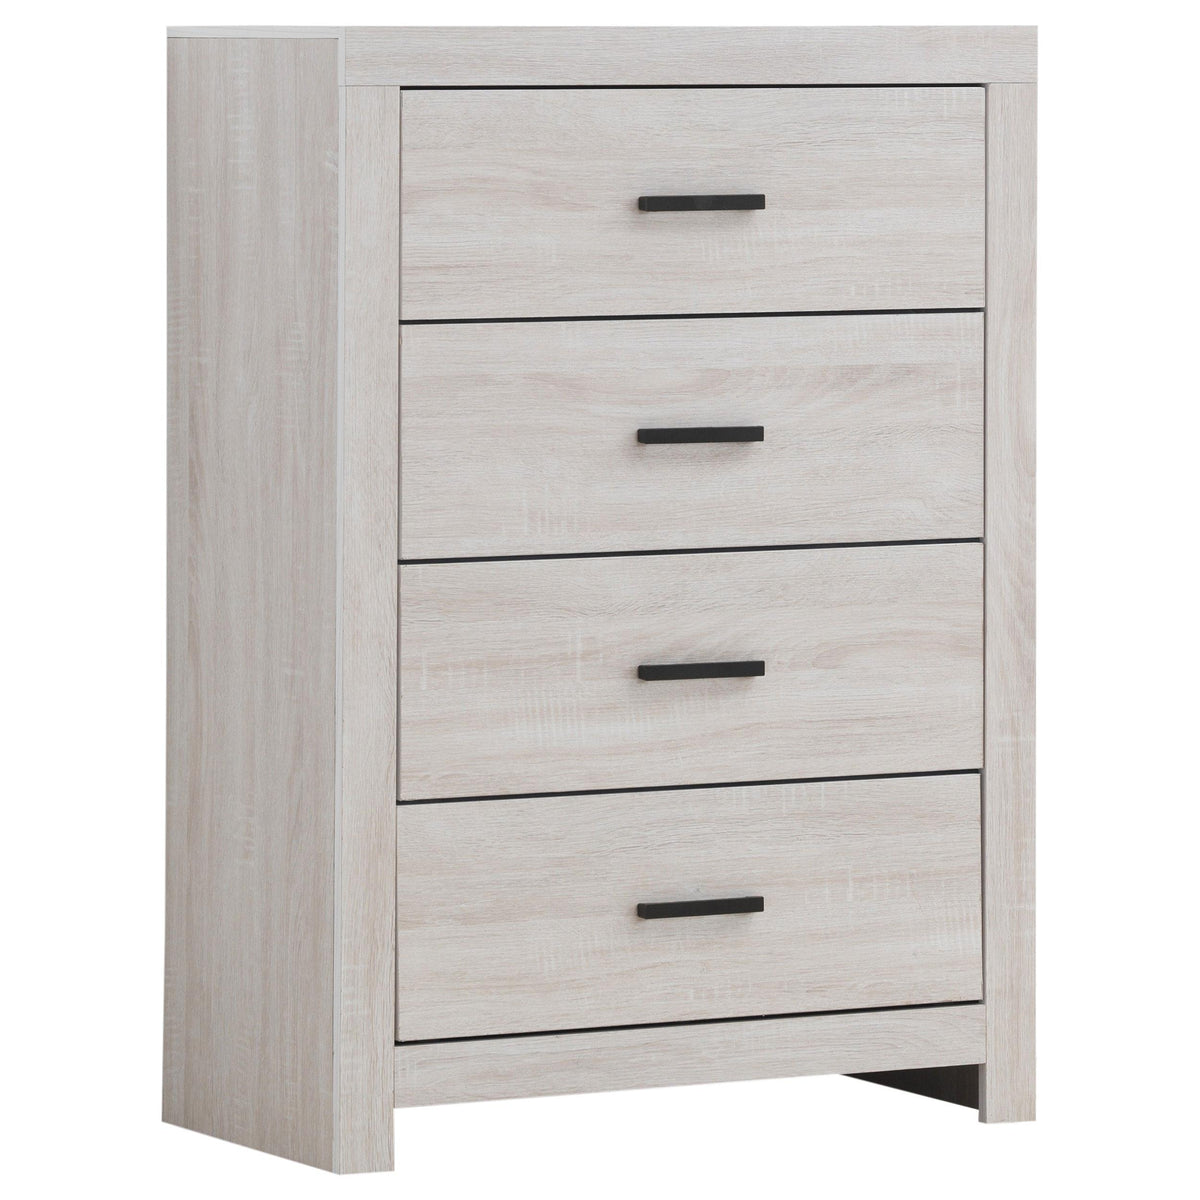 Brantford 4-drawer Chest Coastal White  Half Price Furniture